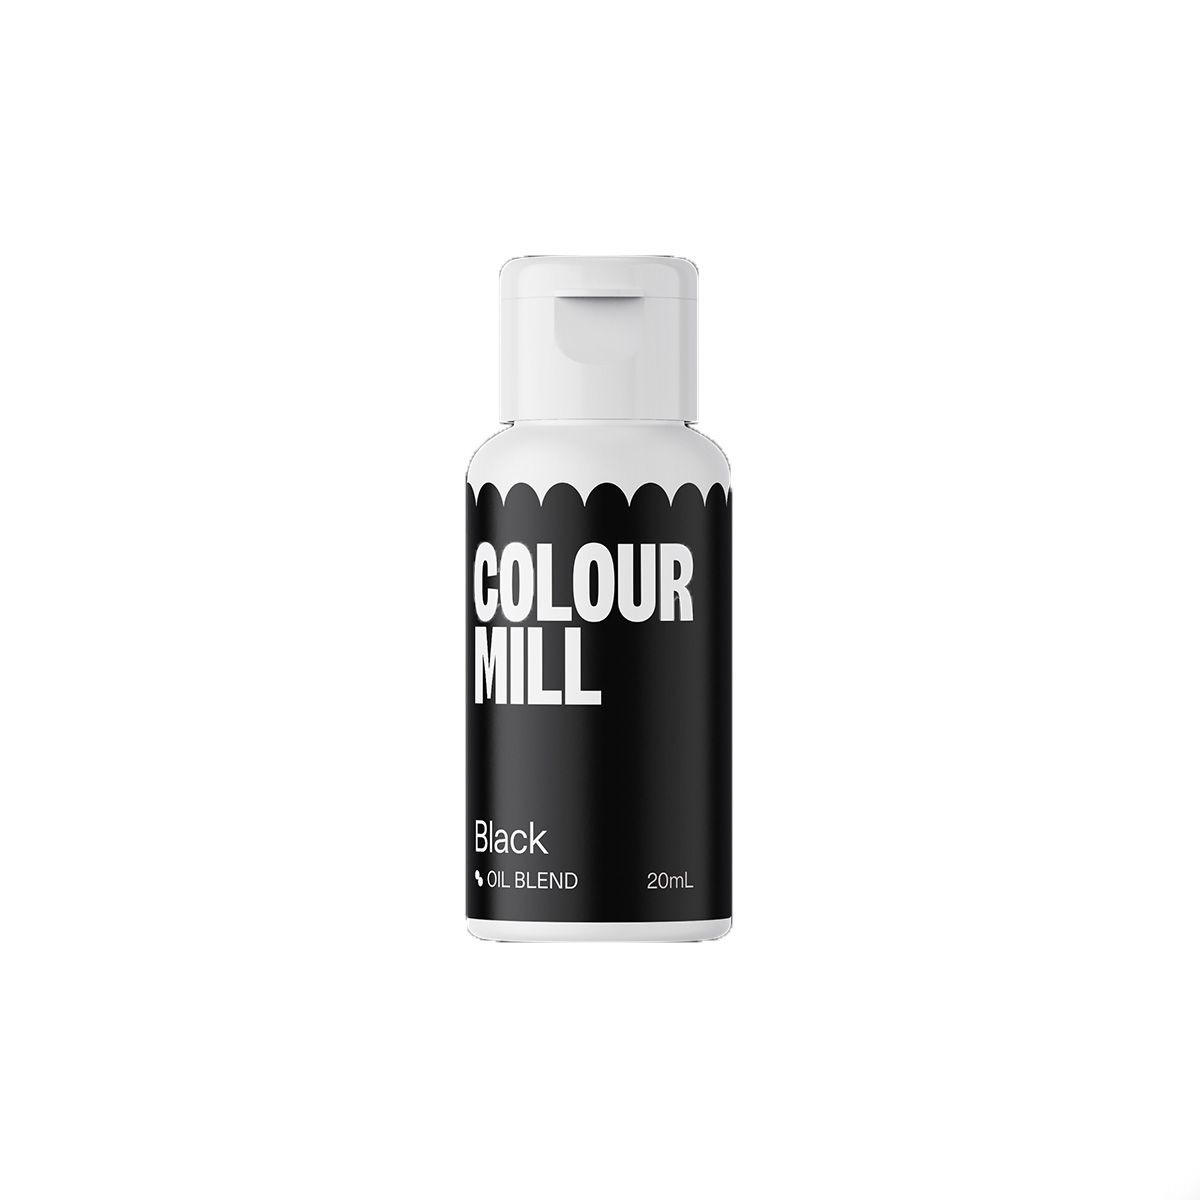 Χρώμα black Colour Mill 20ml